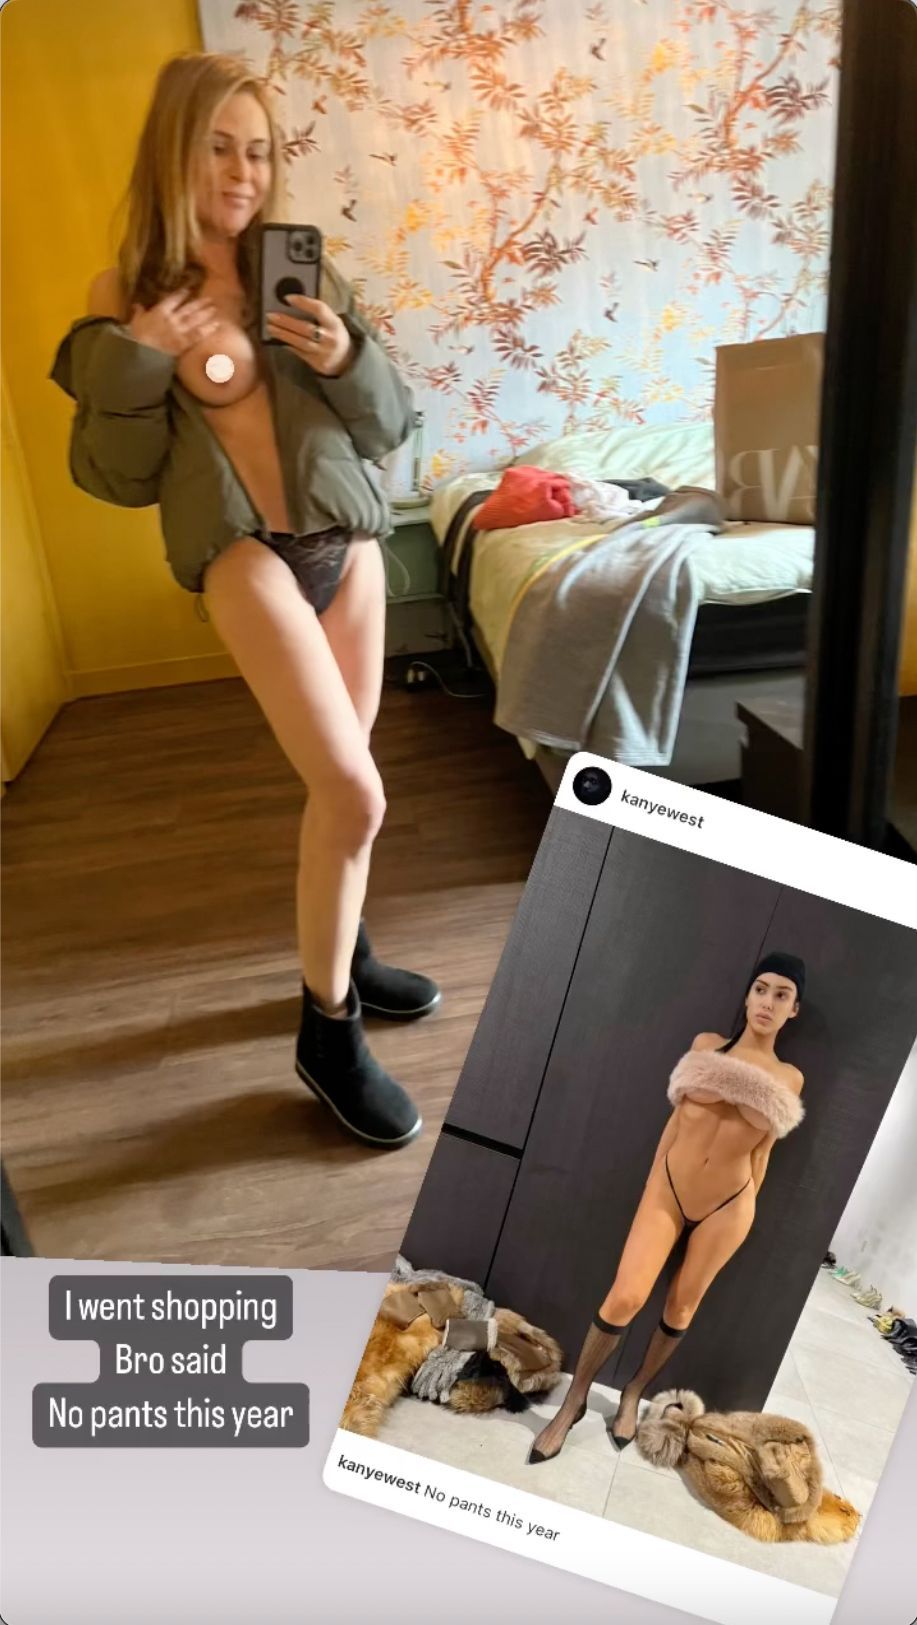 Heleen van Royen neemt advies Ye West aan en maakt ook spicy foto zonder broek